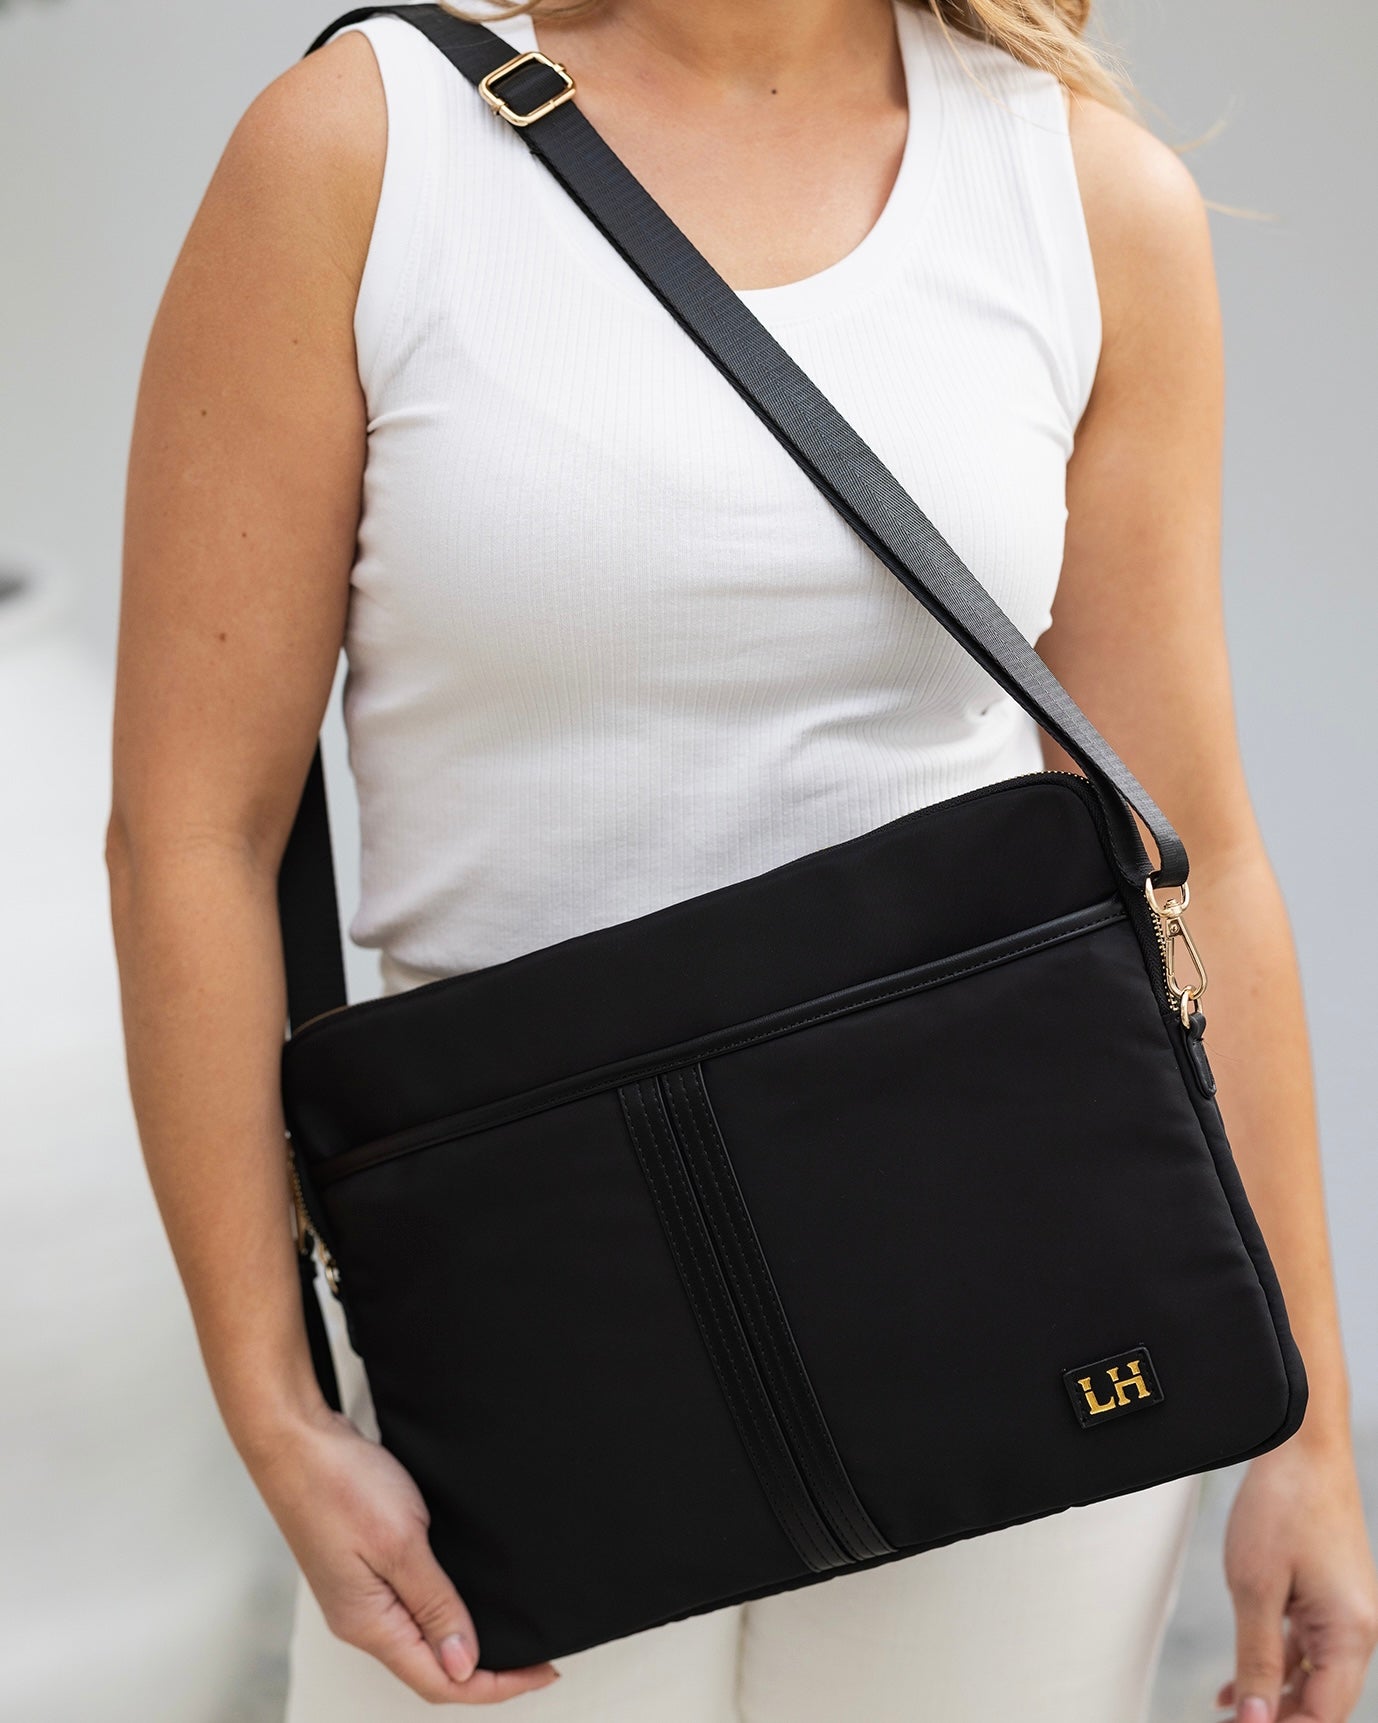 Lina Nylon Laptop Case/Bag (Black)